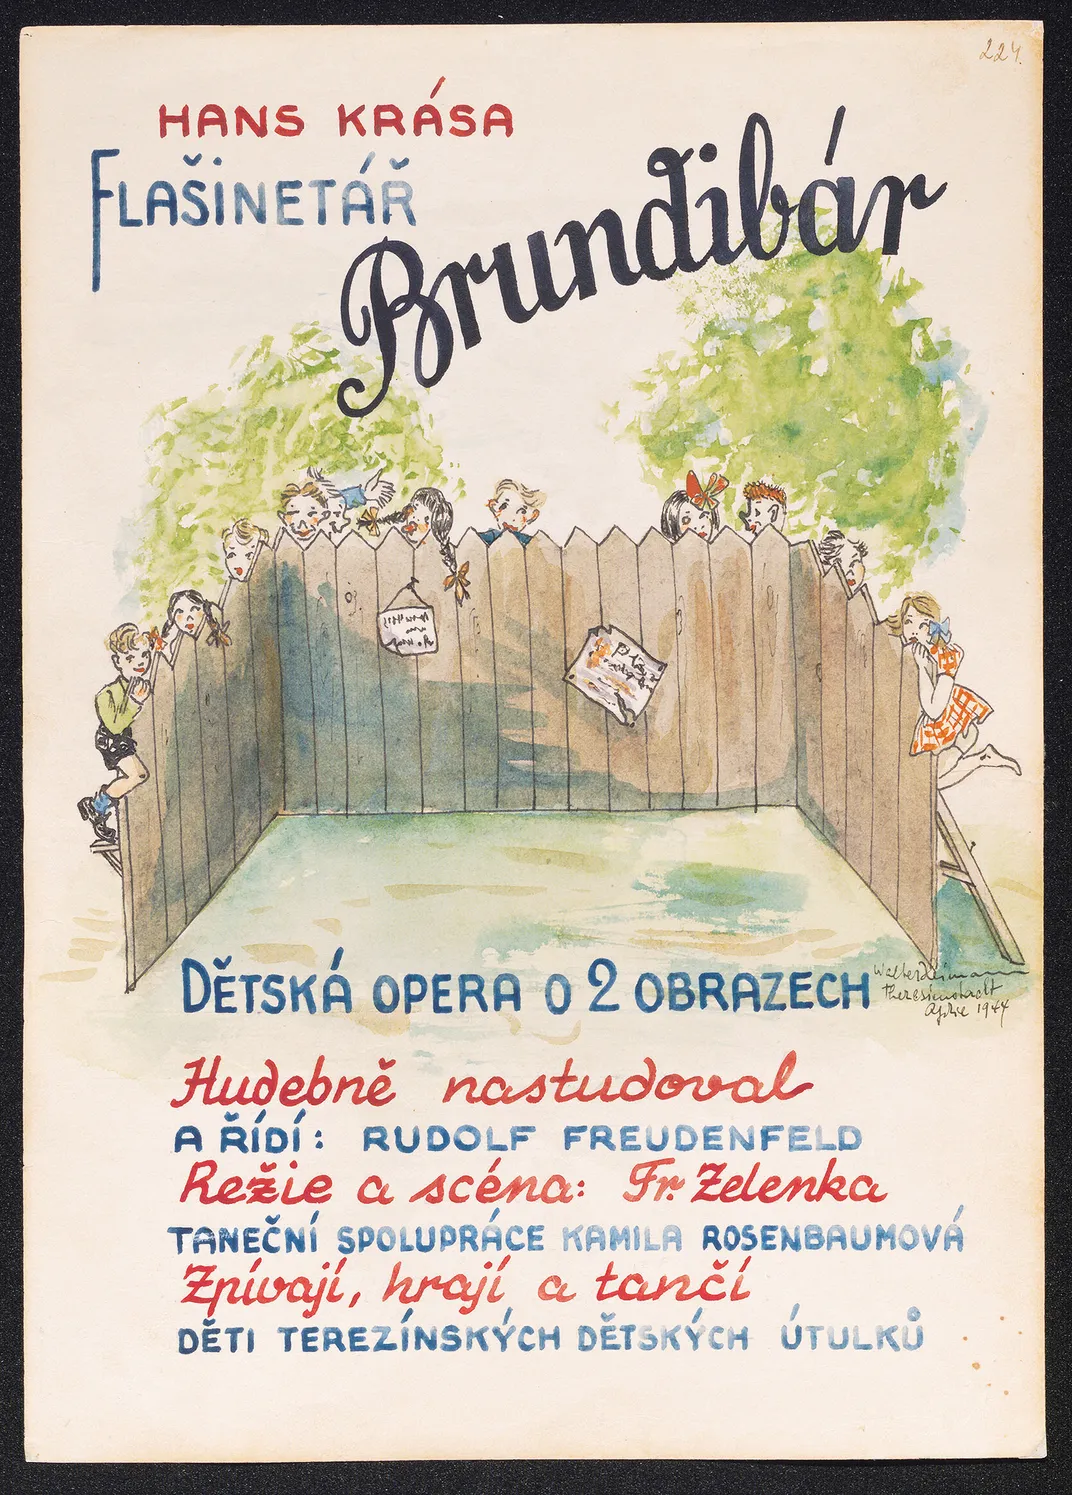 Walter Heimann’s poster for a children’s opera by composer Hans Krása.